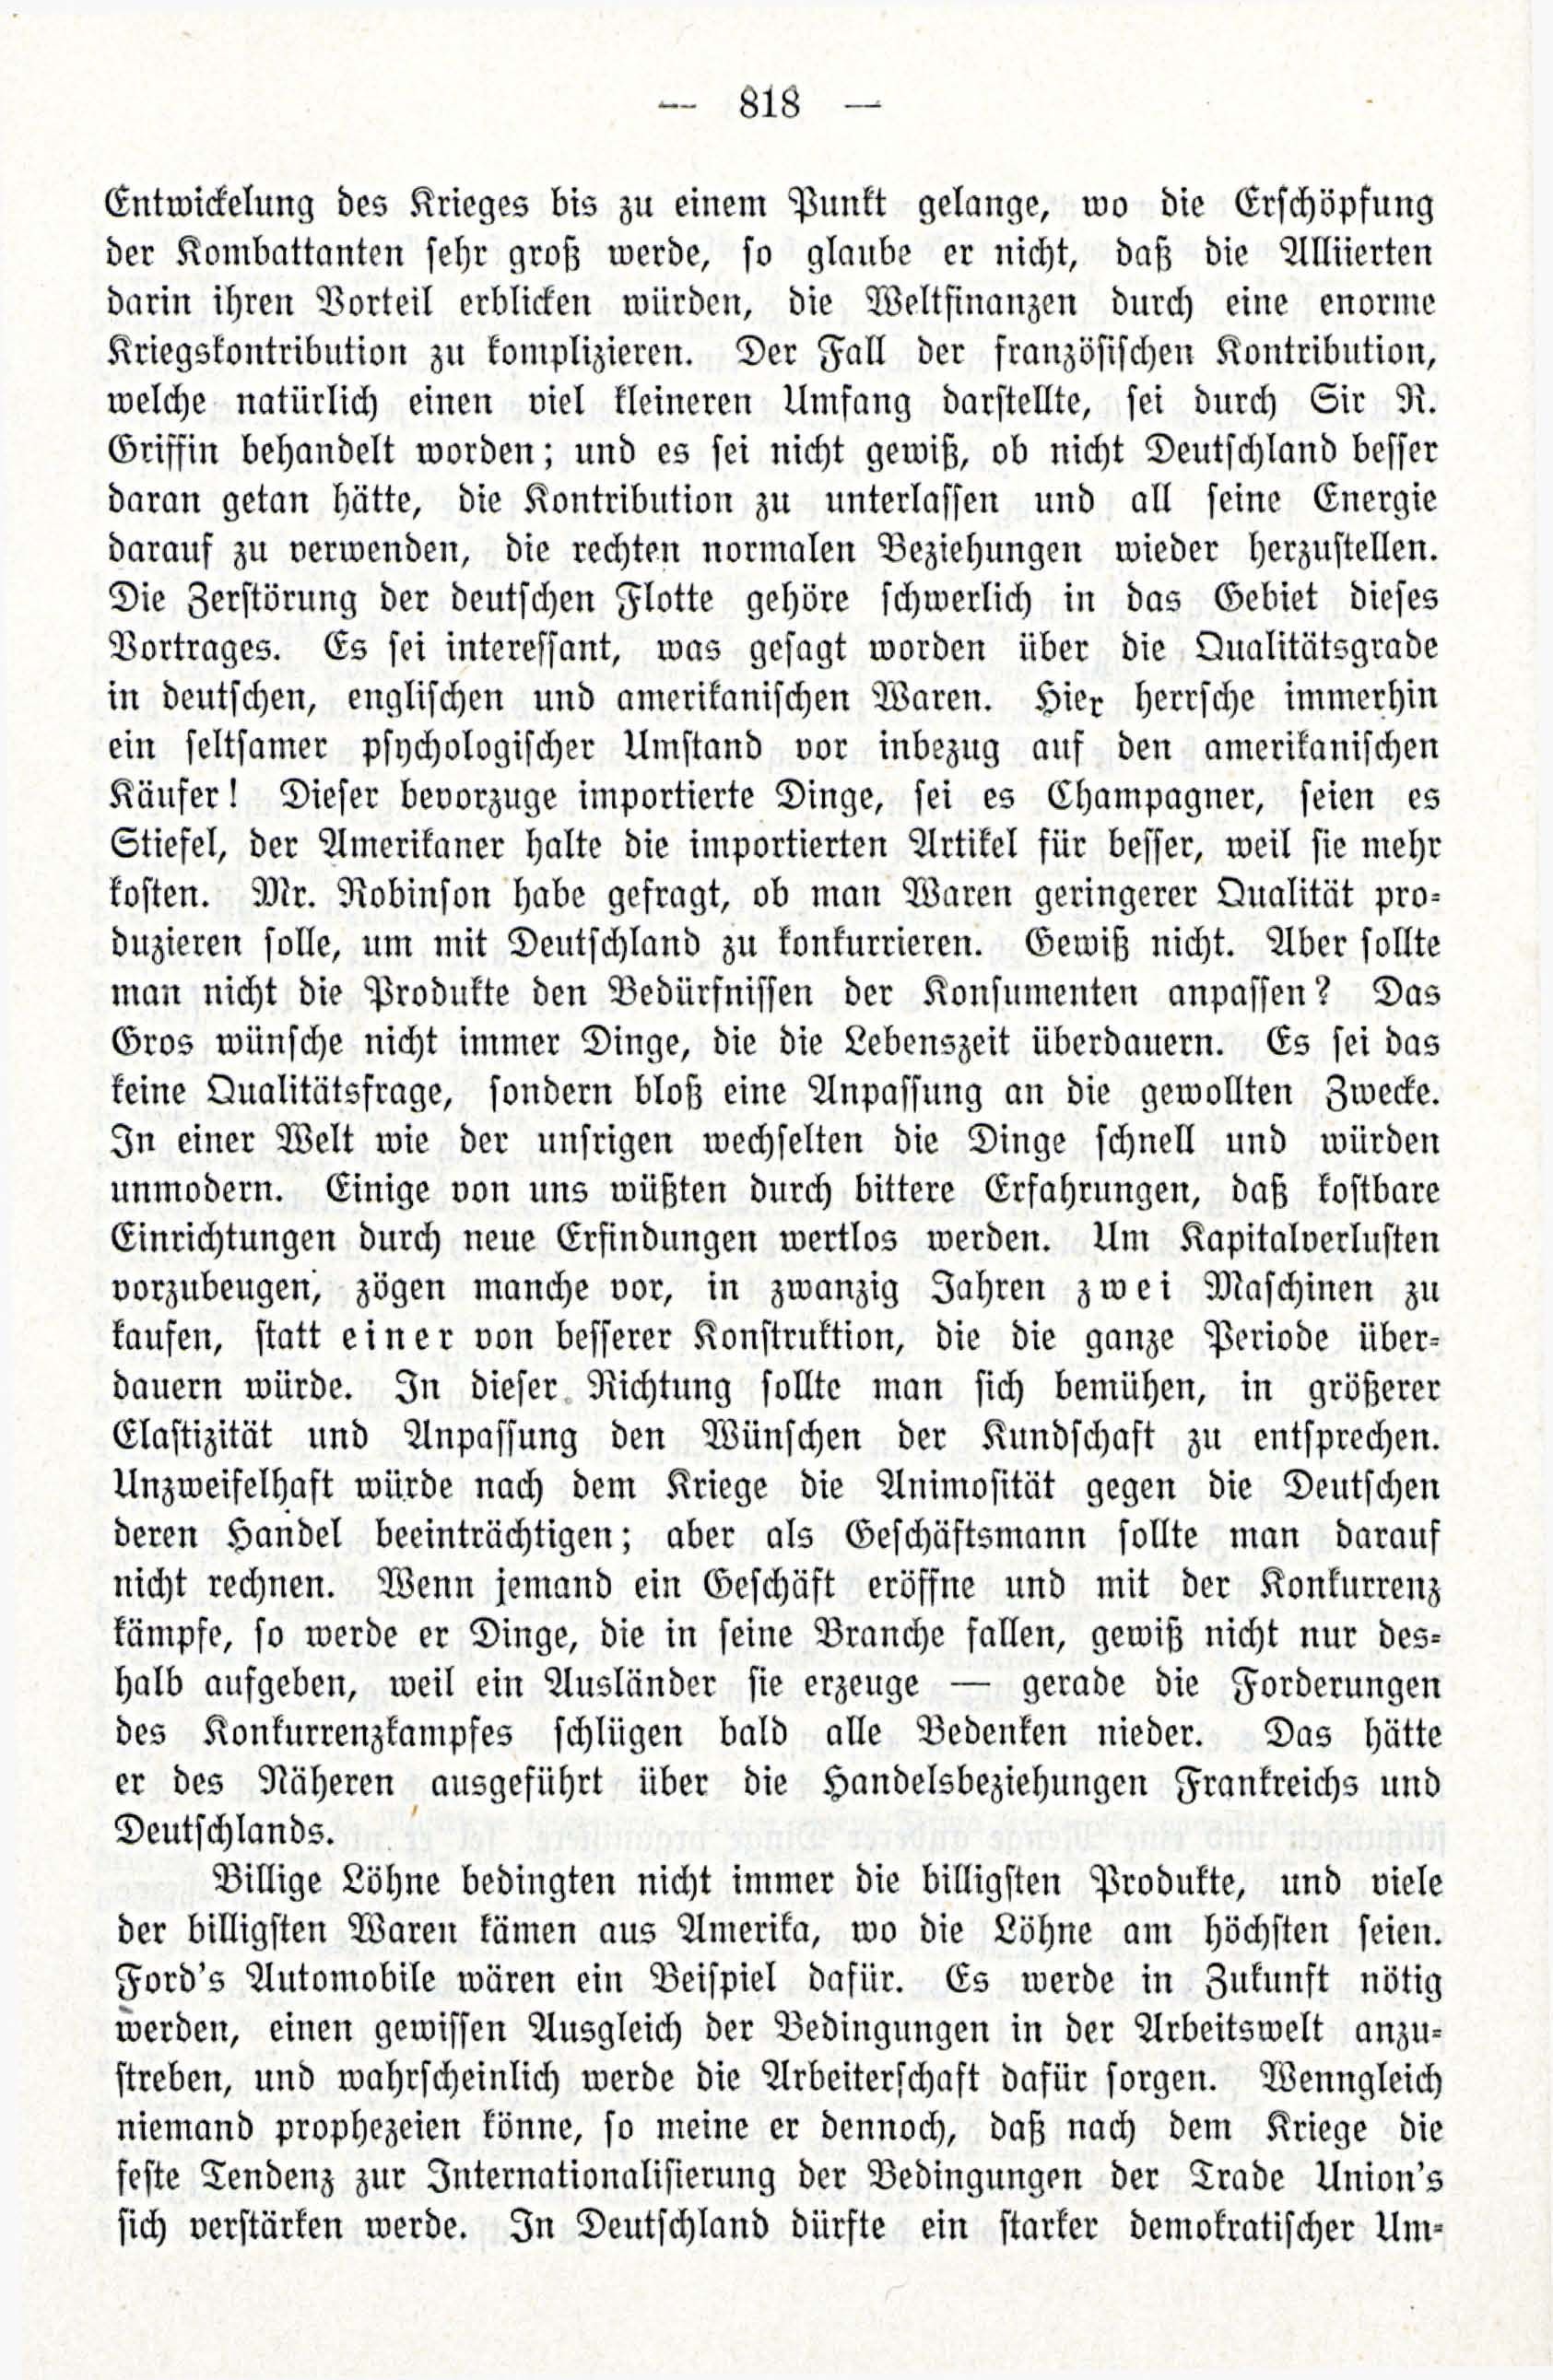 Deutsche Monatsschrift für Russland [3/12] (1914) | 34. (818) Main body of text